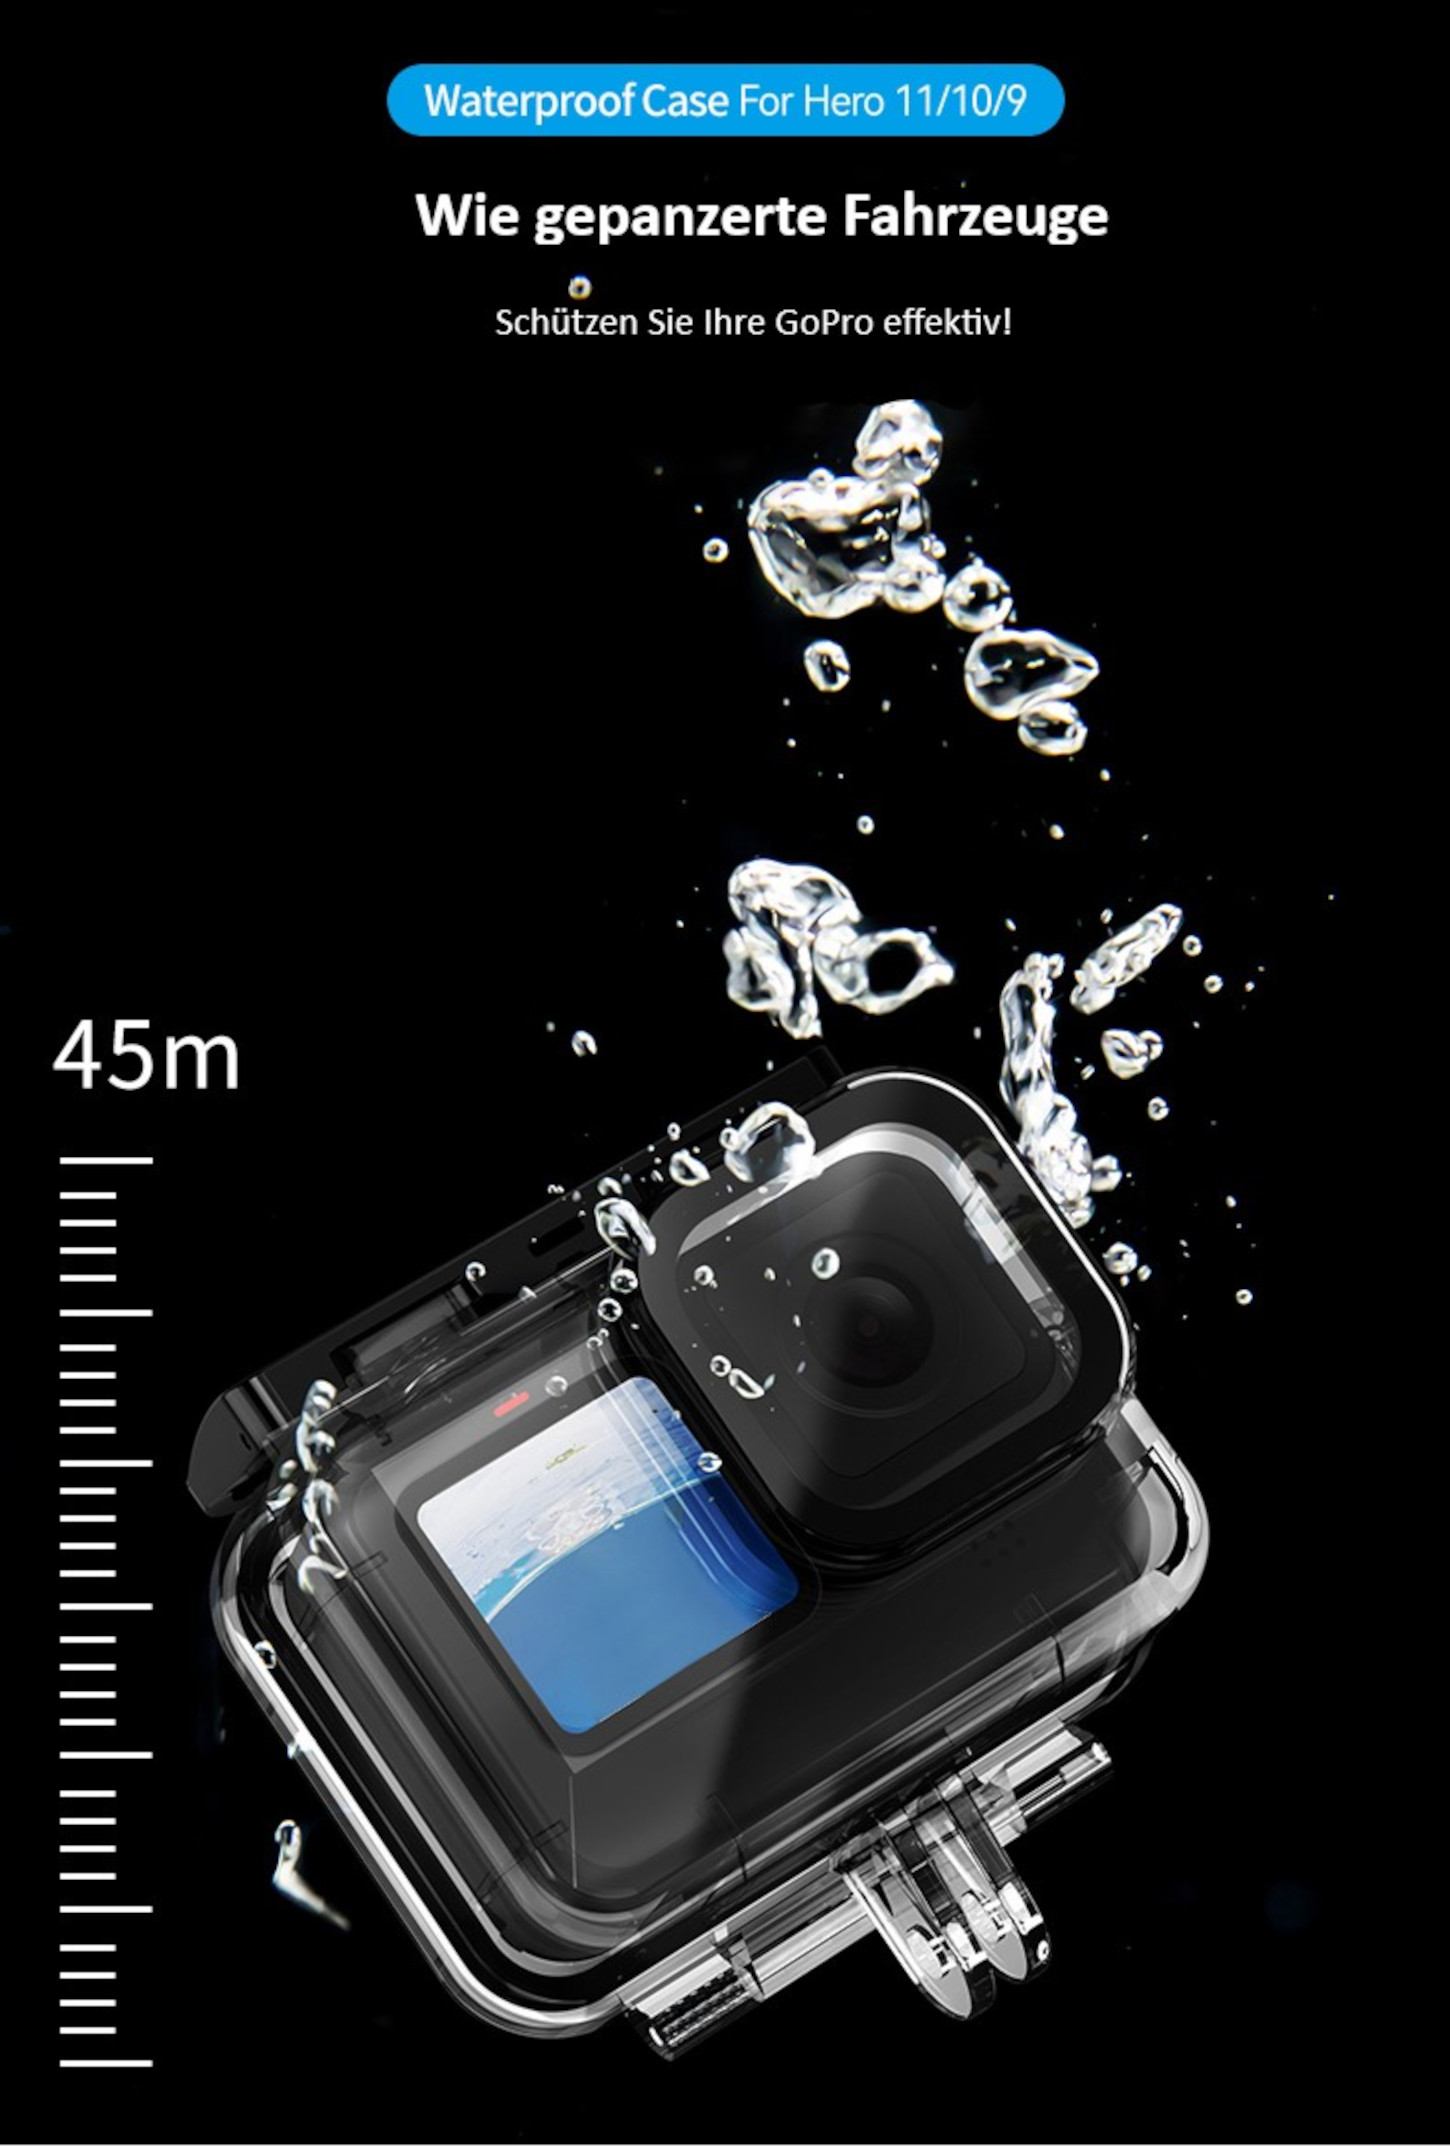 10 Black AYEX Schutzbox Case, Case Wasserdichtes Hero 9 11 Wasserdichtes Gehäuse, GoPro Waterproof